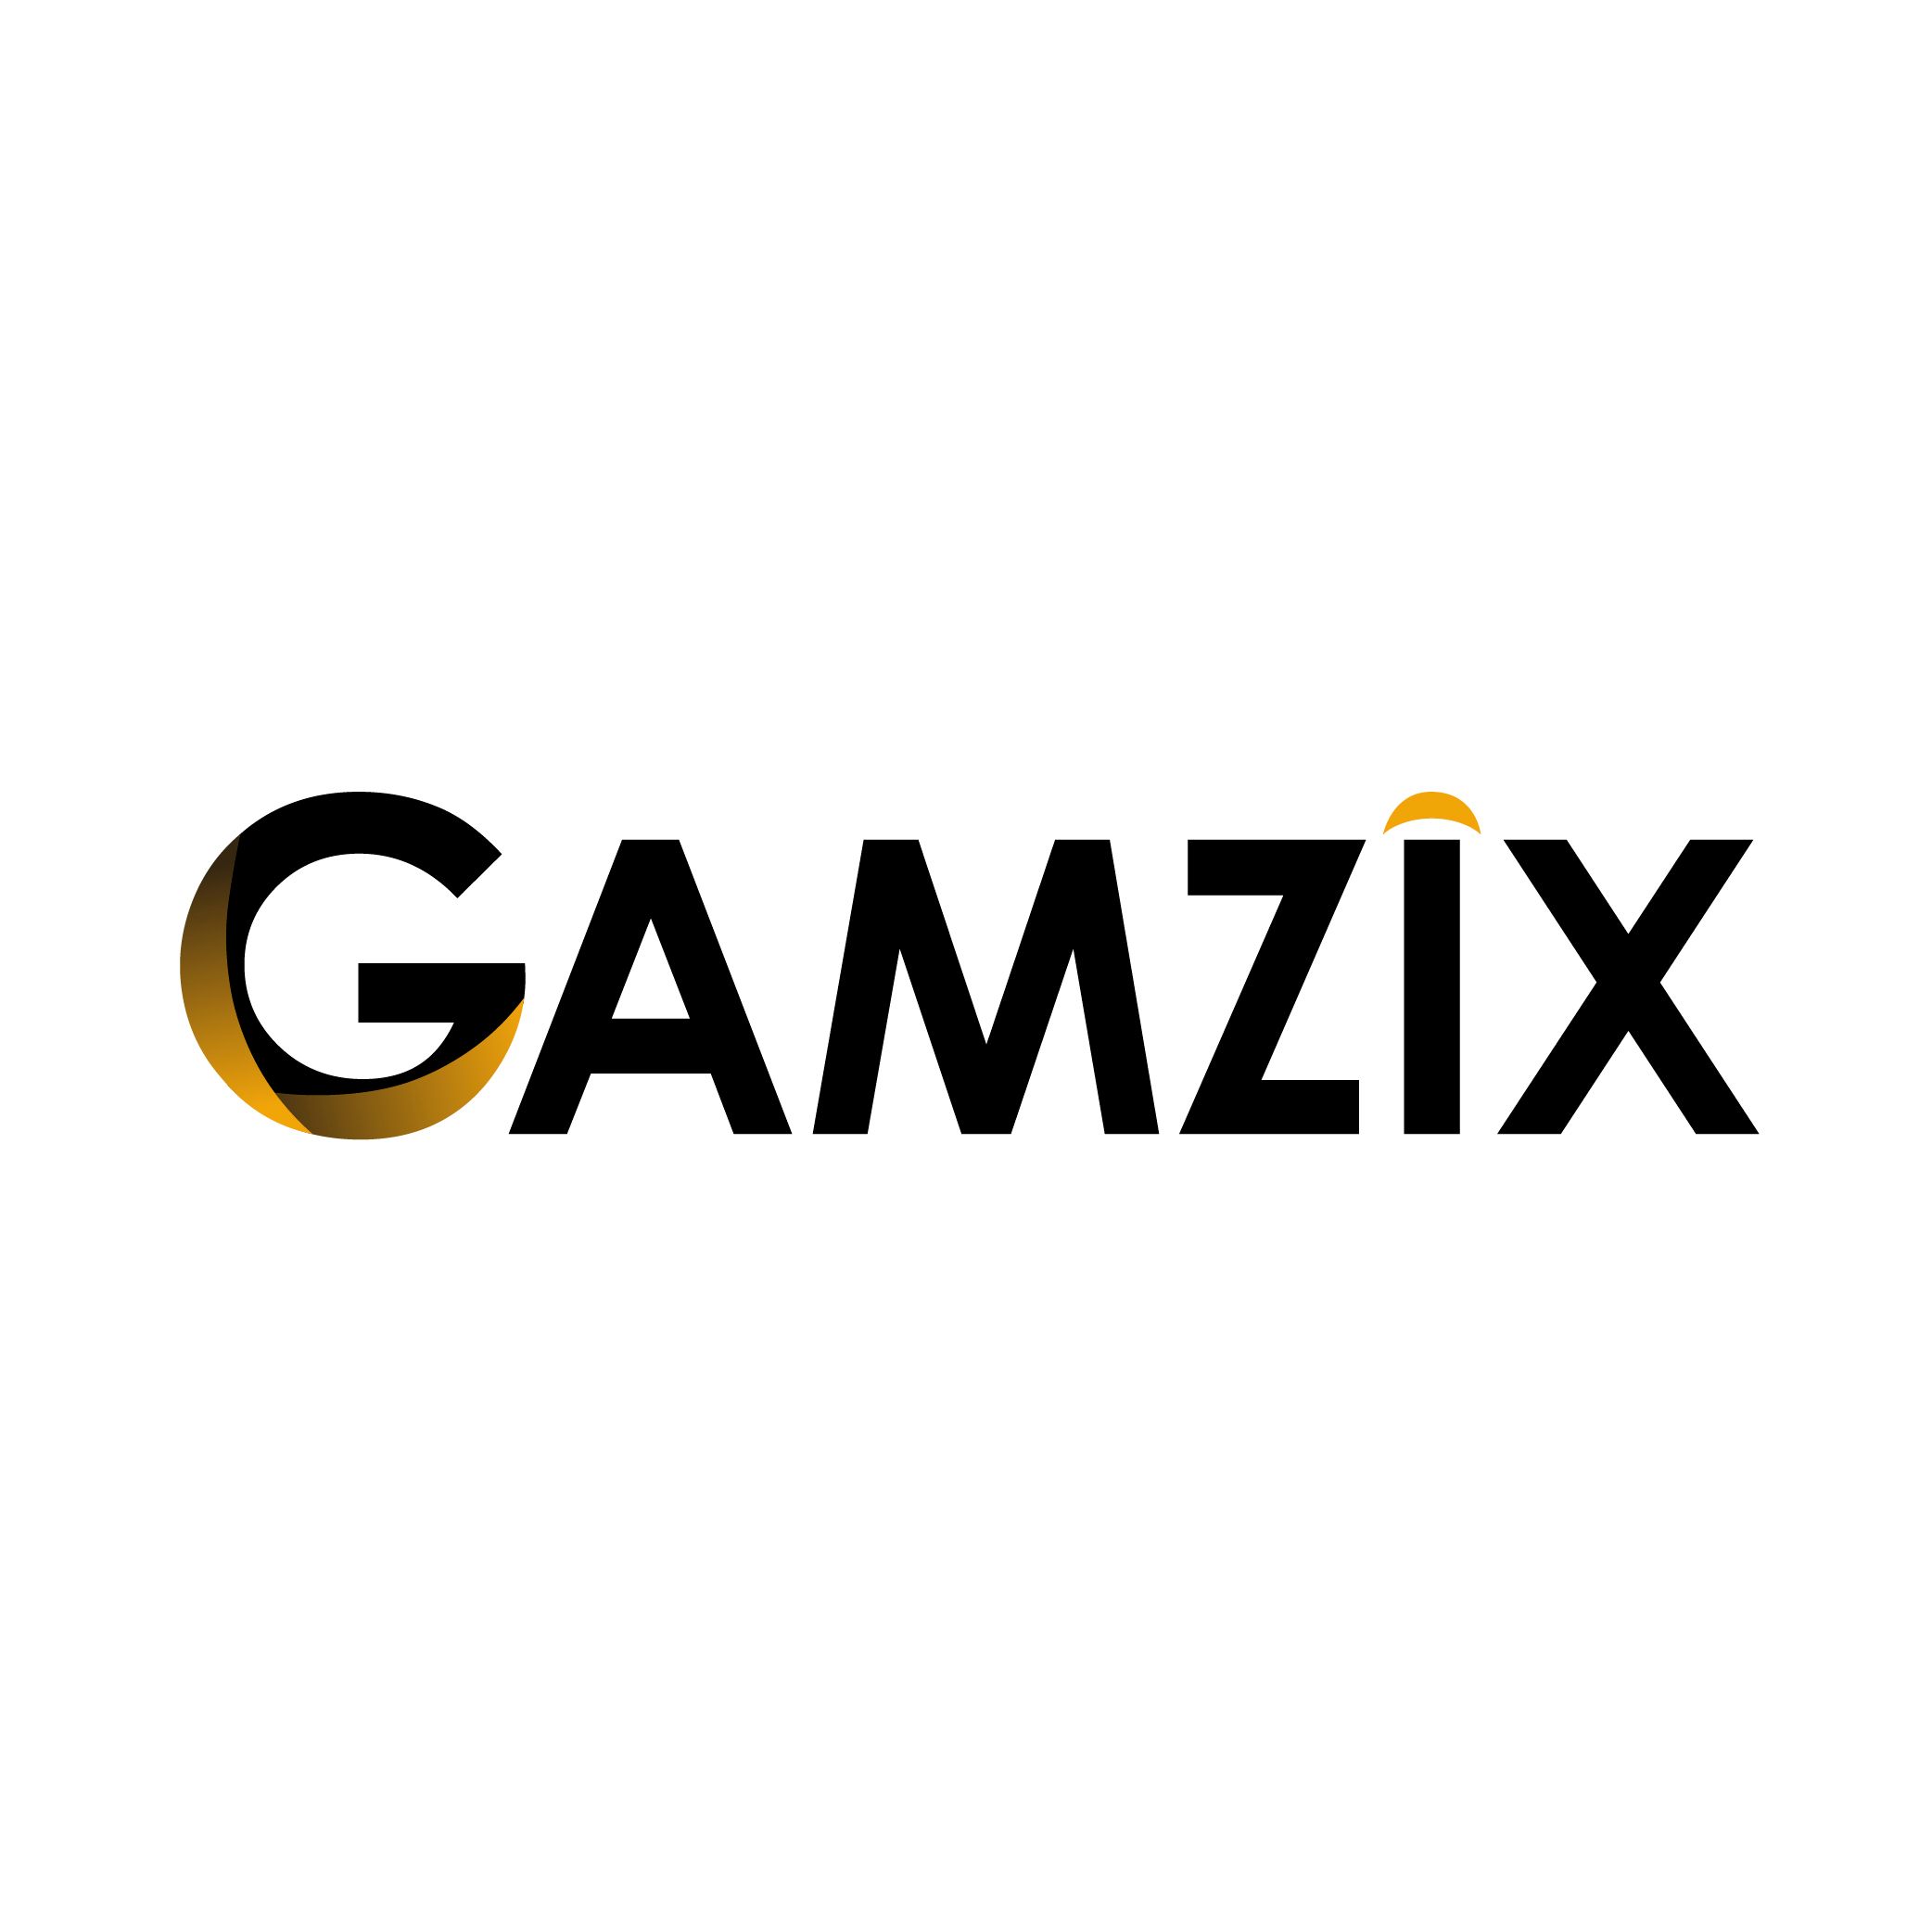 Gamzix Technology O'